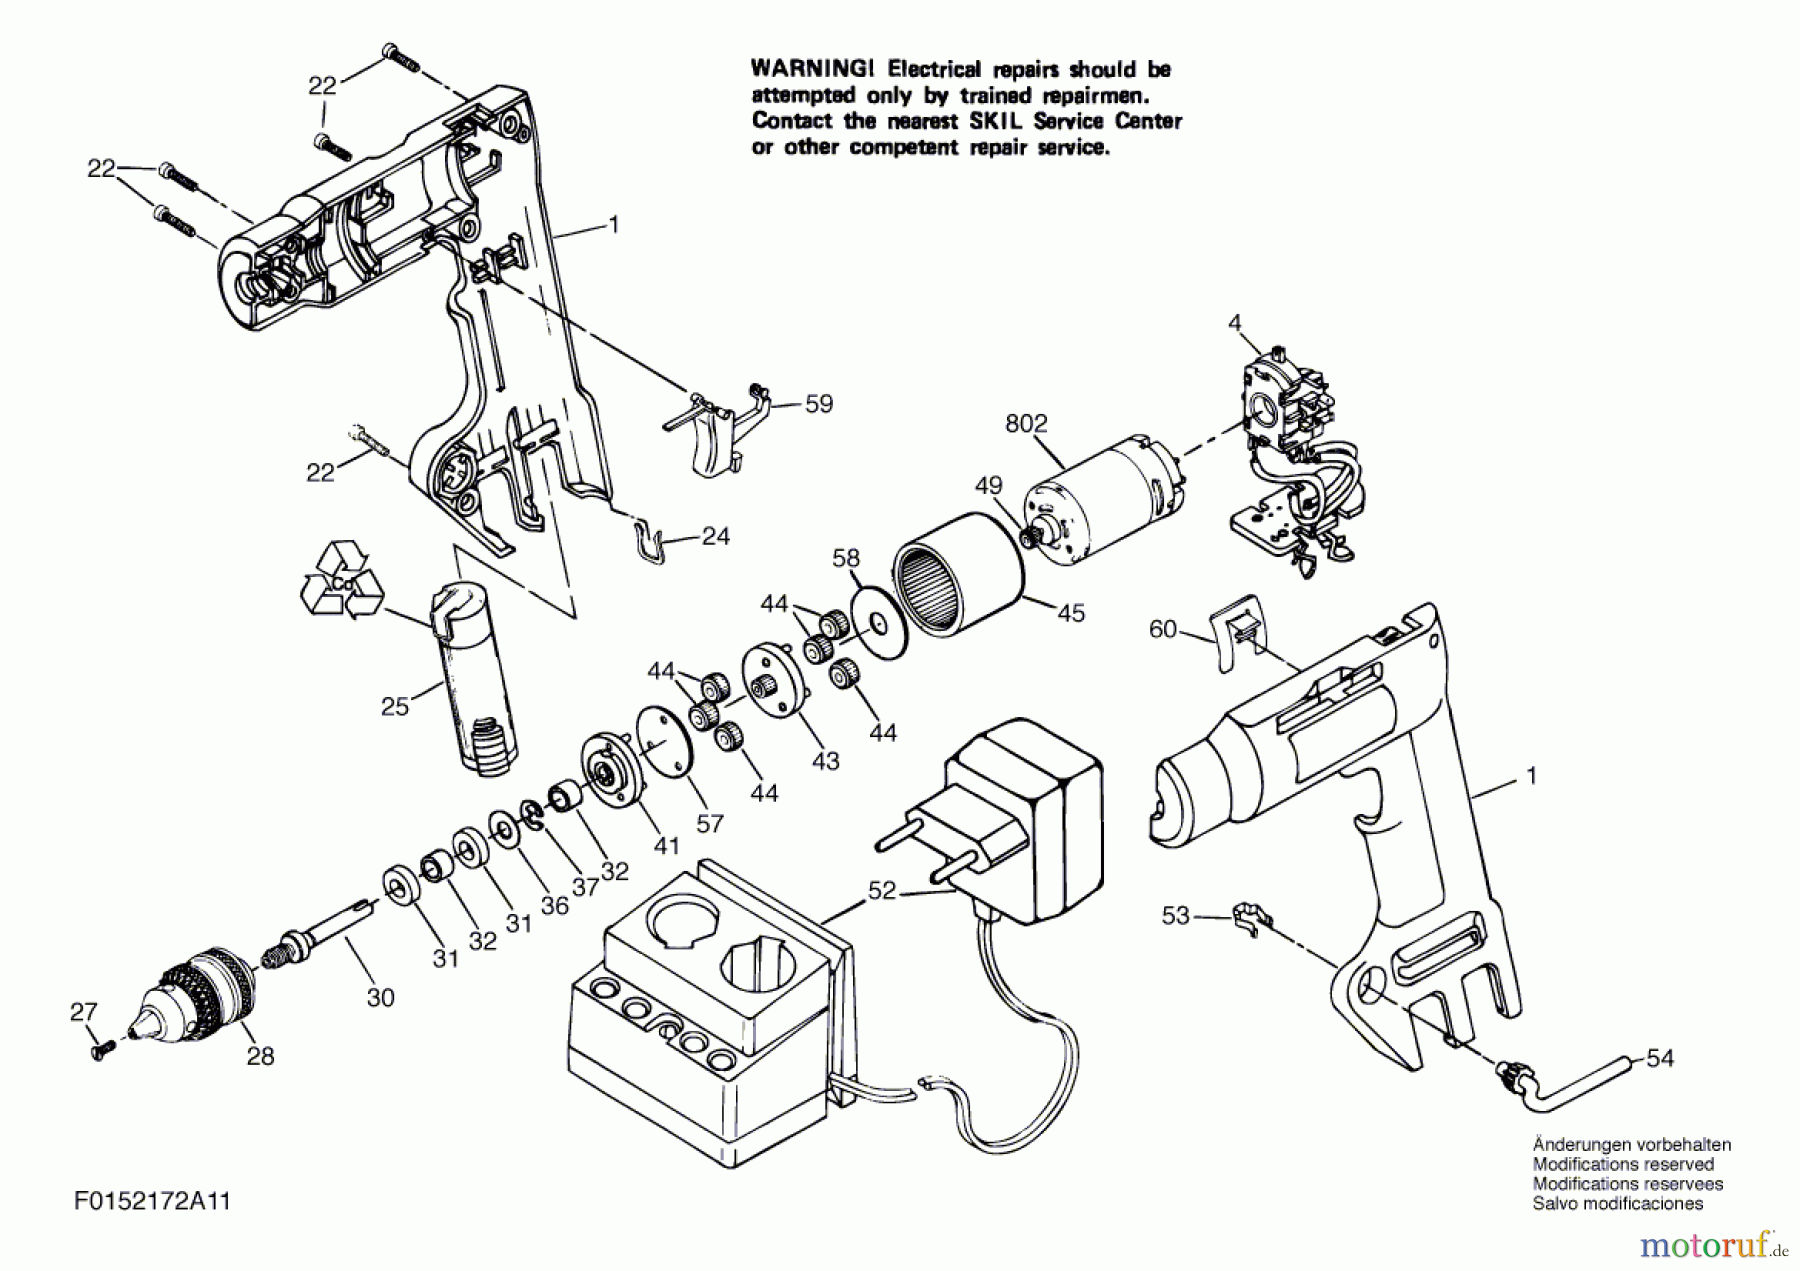  Bosch Werkzeug Bohrschrauber 2172 Seite 1